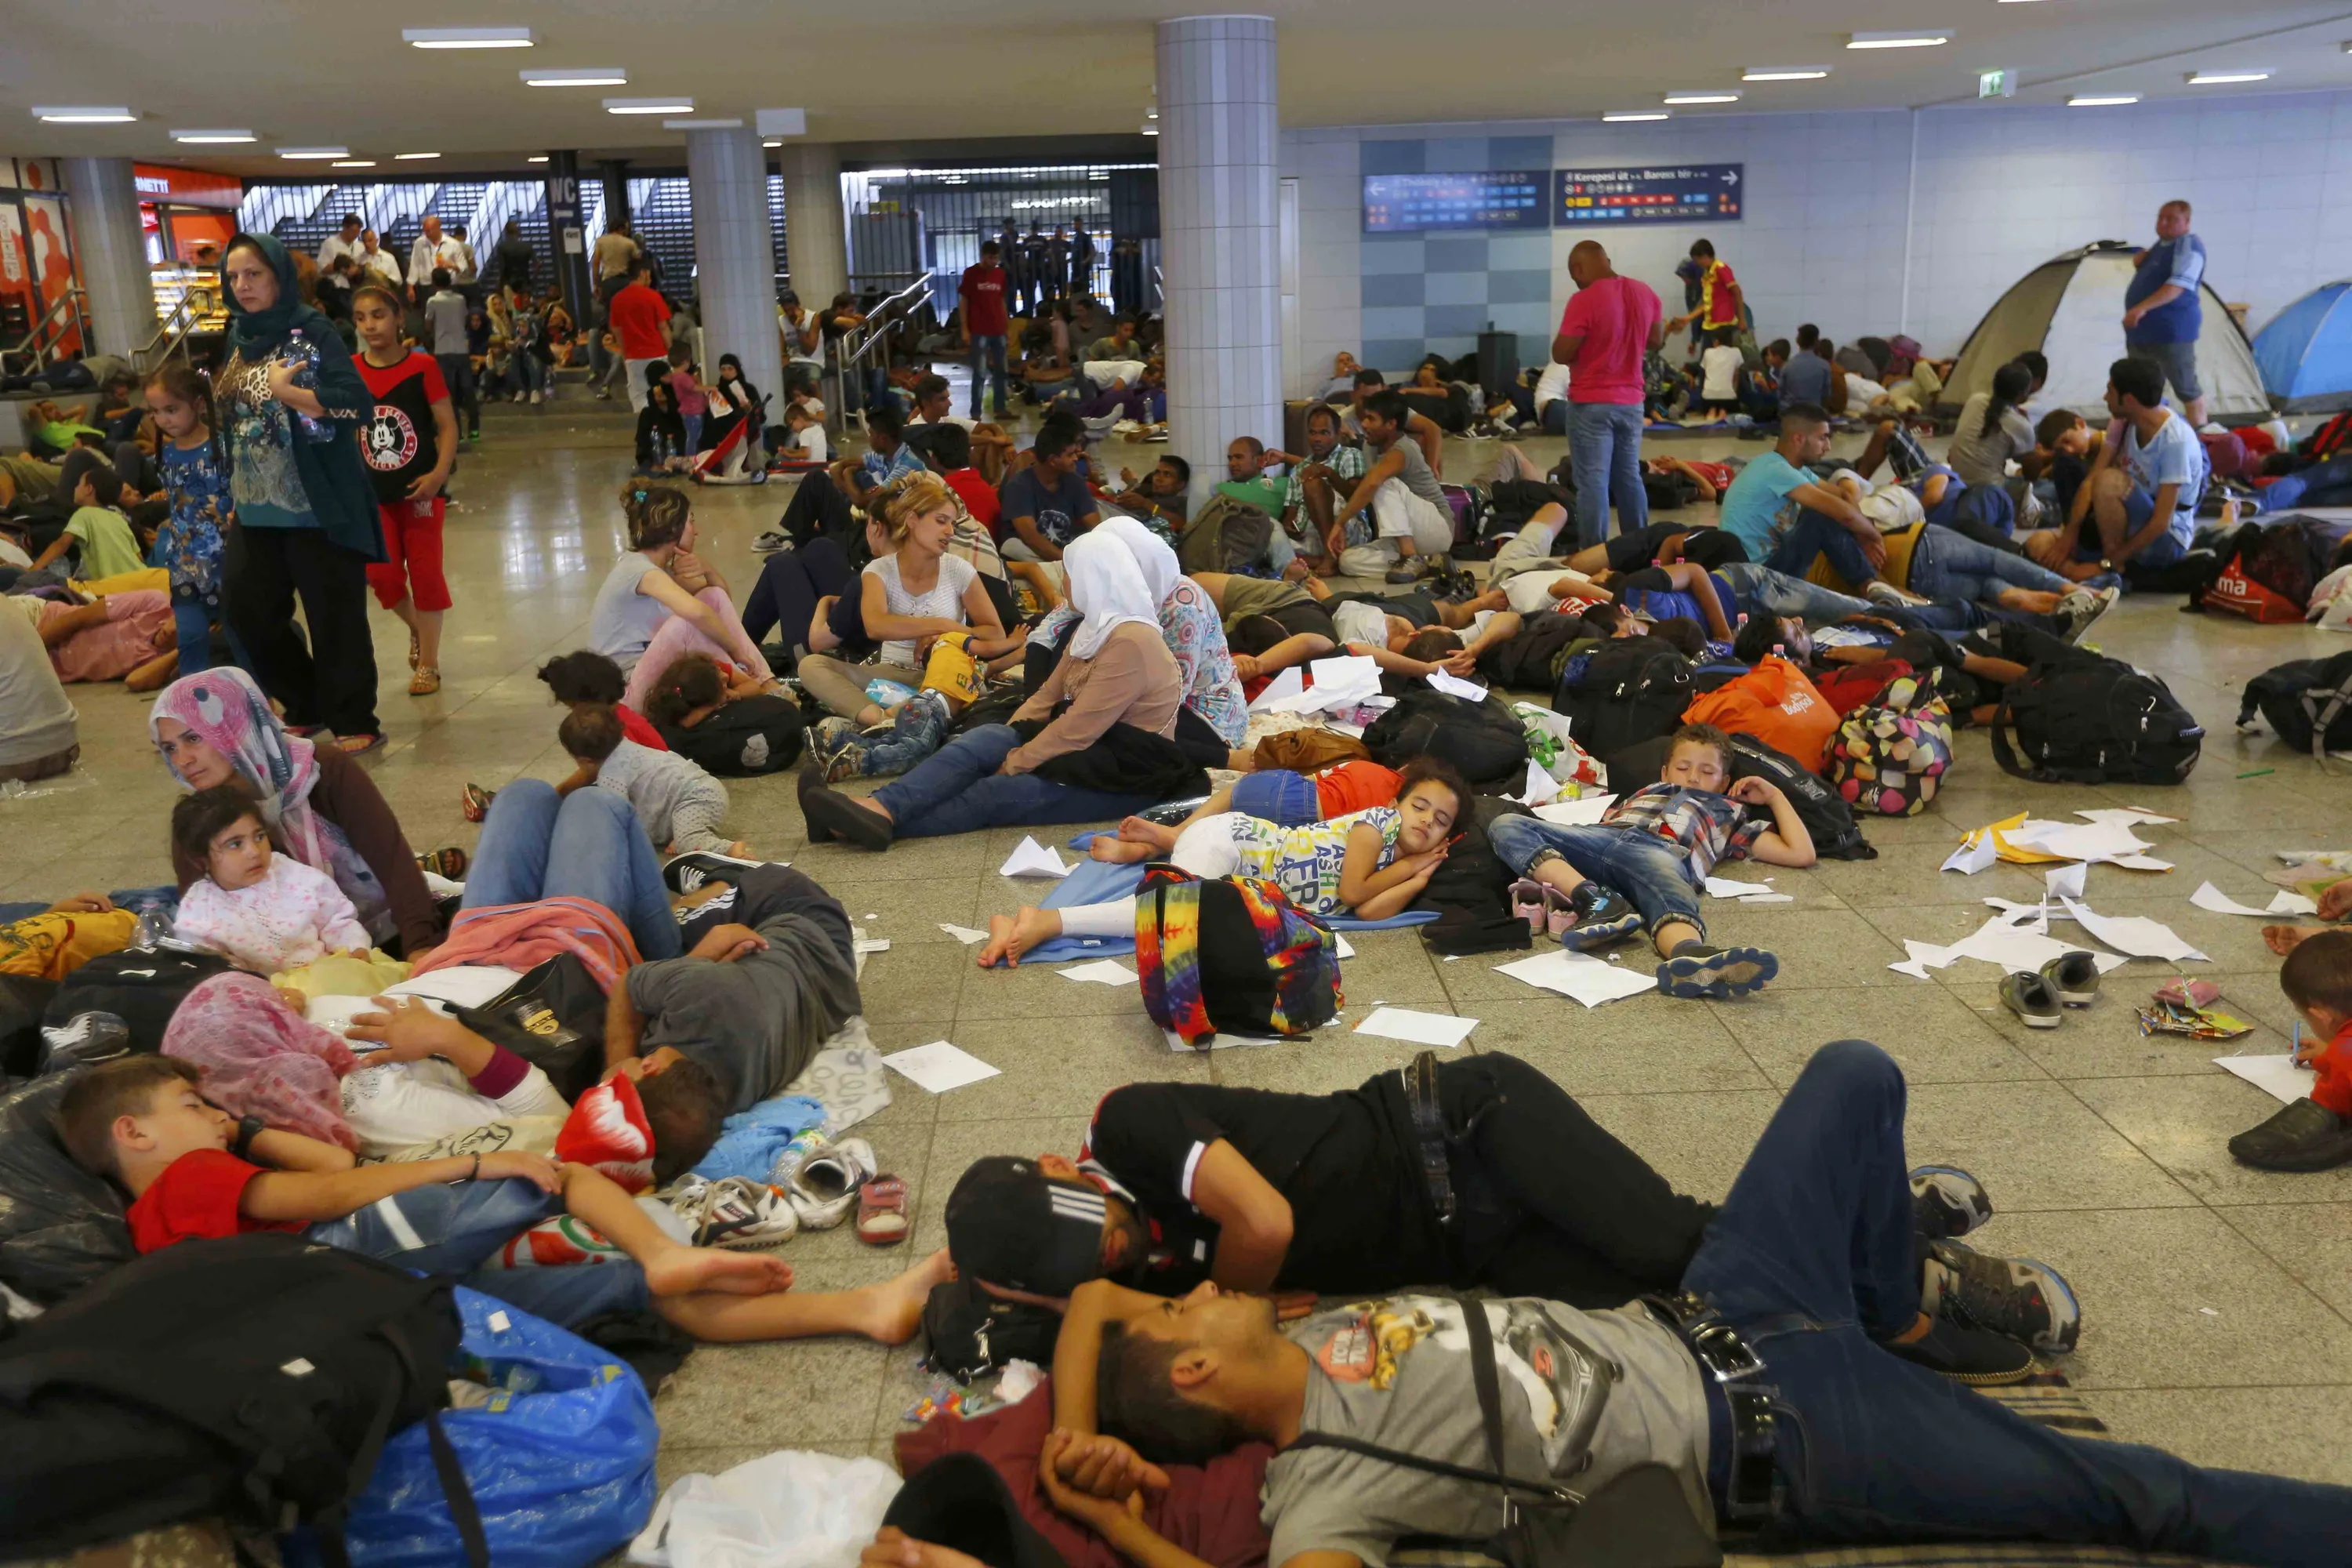 Как живут эмигранты. Вокзал Брюссель мигранты. Брюссель вокзал с беженцами. Беженцы в Бельгии. Мигранты в Европе.